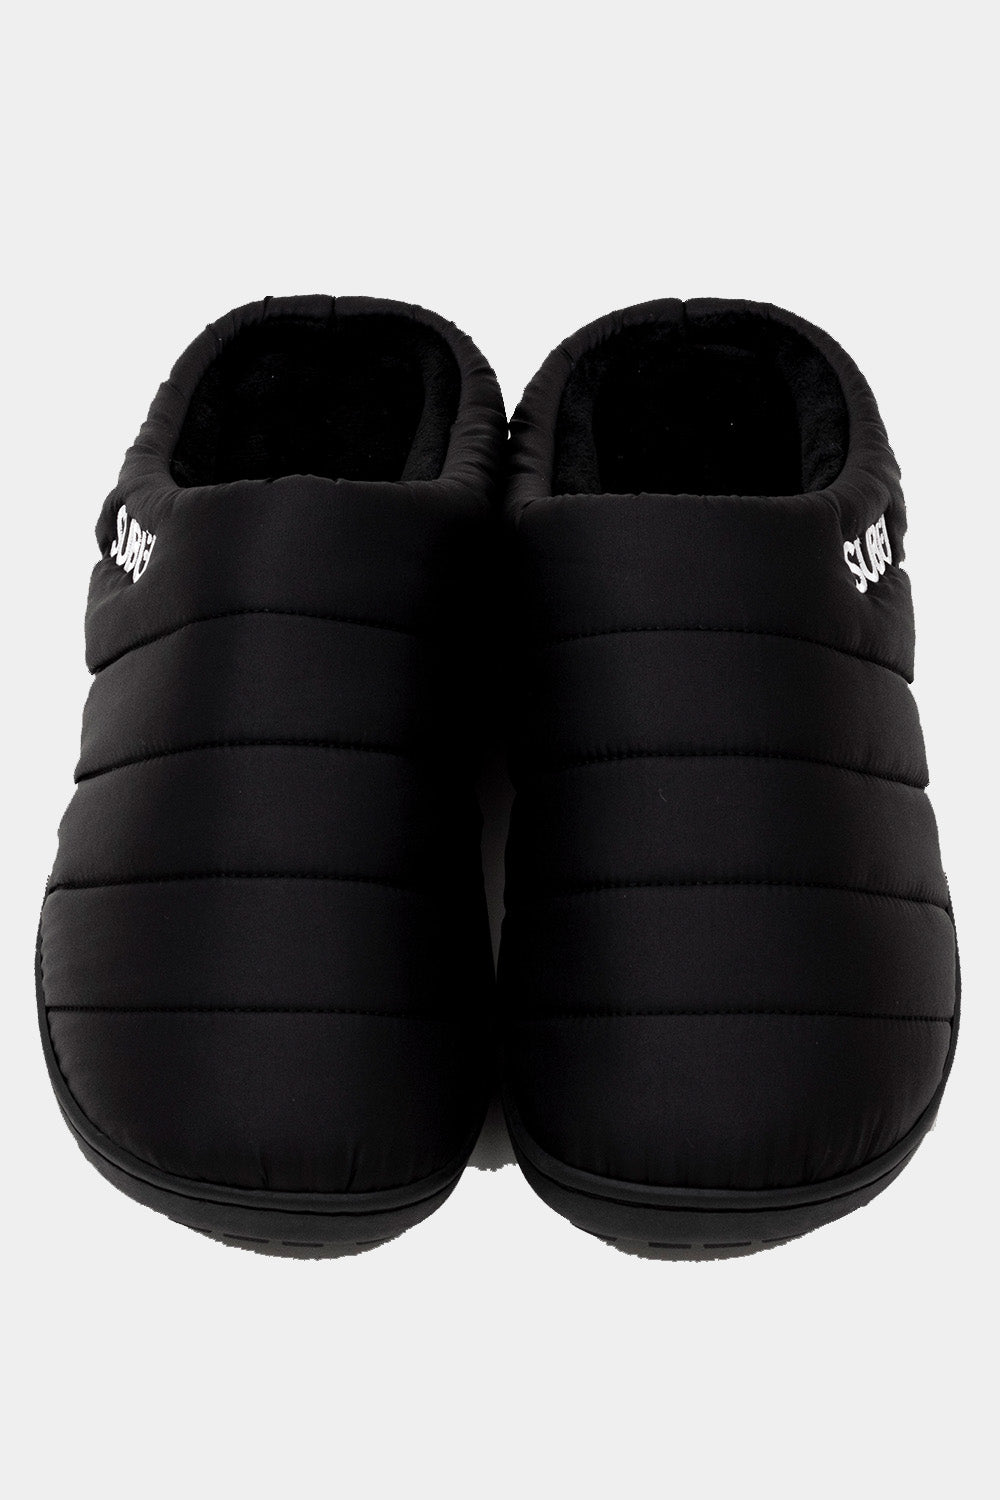 SUBU Indoor Outdoor Slippers (Black) | Number Six